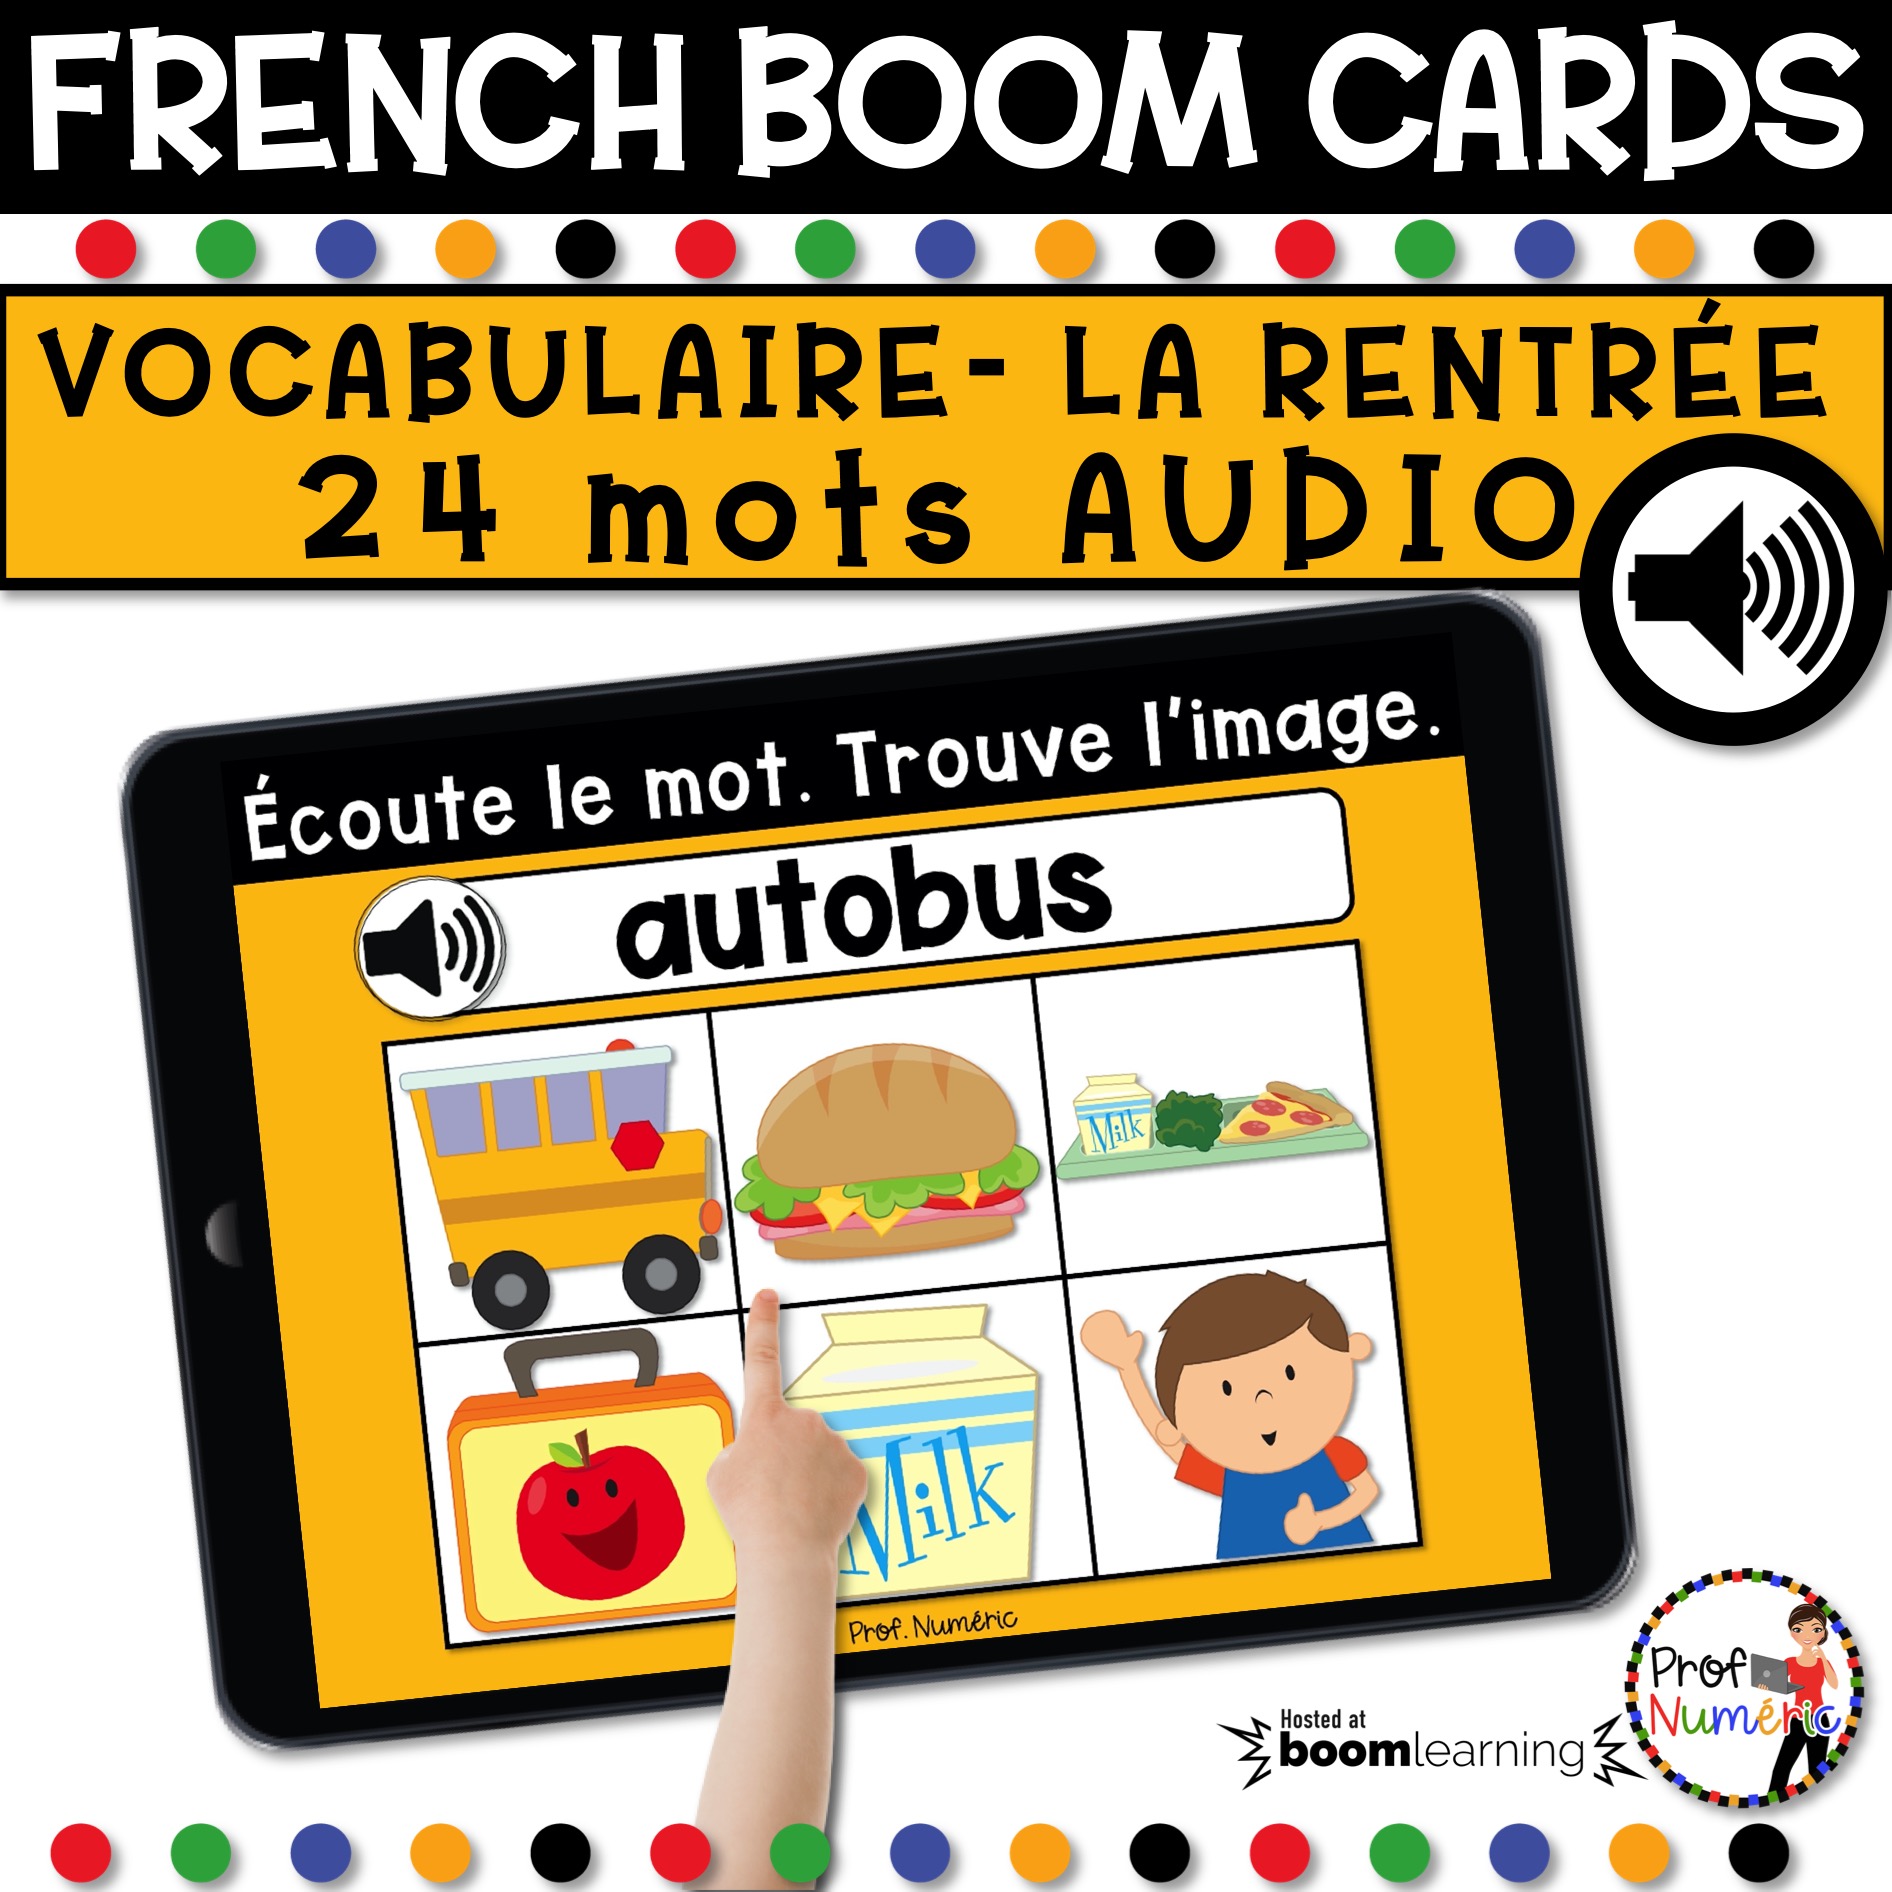 BOOM CARDS AUDIO - Vocabulaire RENTRÉE SCOLAIRE - Prof Numéric